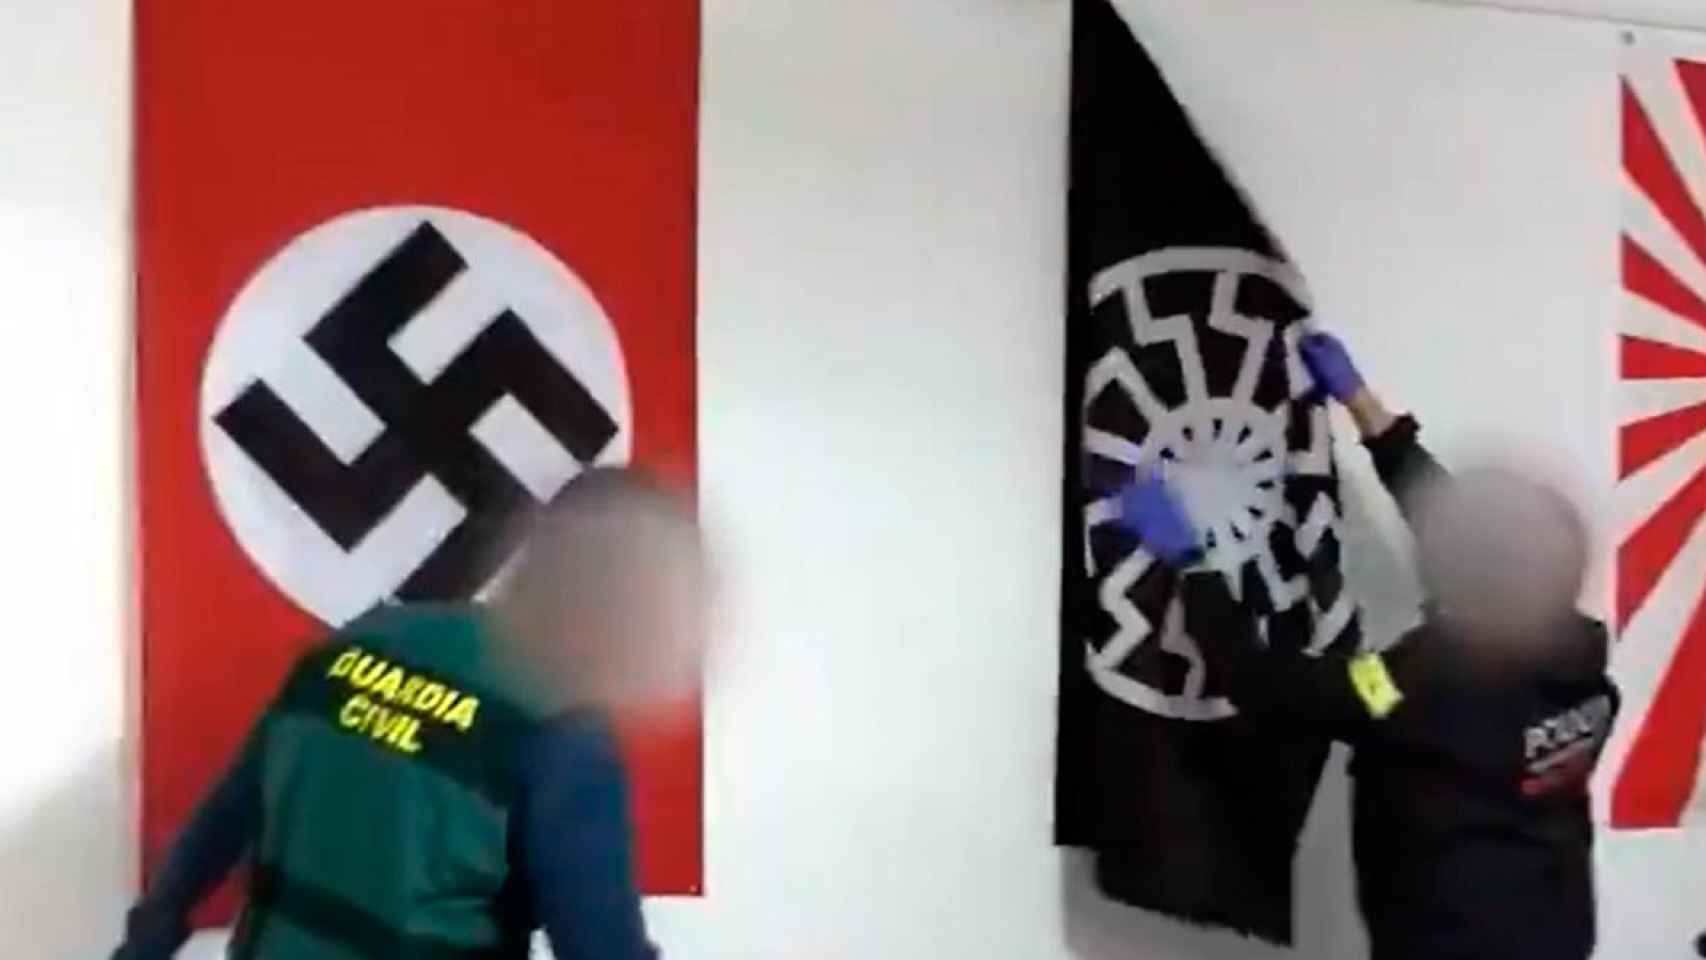 Un mosso y un guardia civil retiran simbología nacionalsocialista de casa de uno de los arrestados por supremacismo blanco / MOSSOS